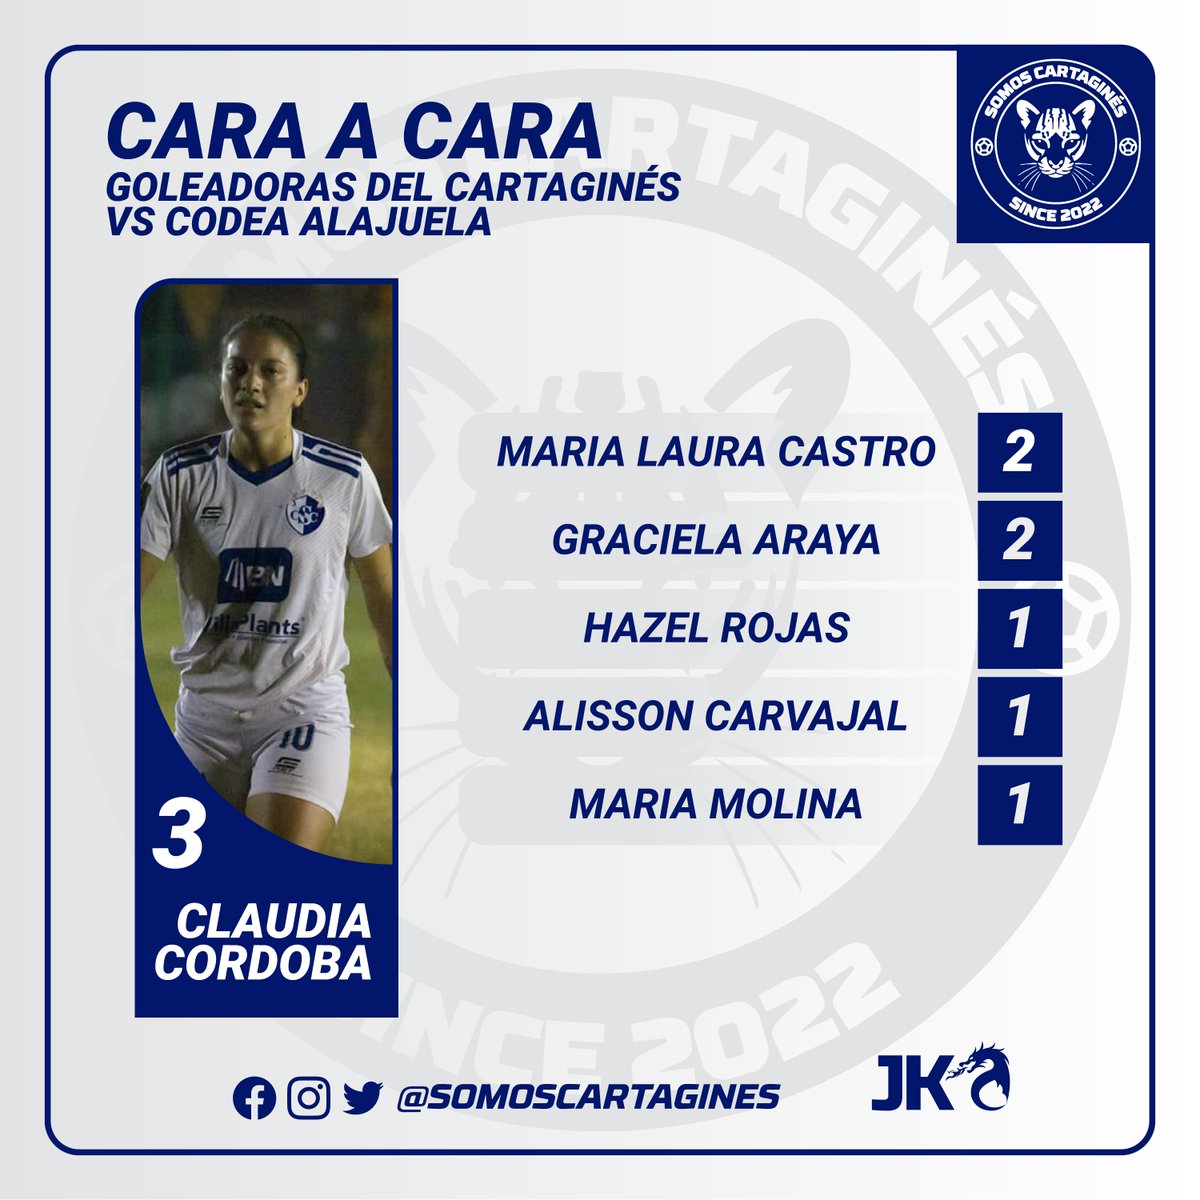 #CaraaCara
En 5 oportunidades Codea Alajuela y Cartaginés se han enfrentado en la segunda división.
(Recordemos que anteriormente CODEA fue el equipo de La Suerte)🔴⚪🆚🔵⚪.
#1CSC #VamosCartagines